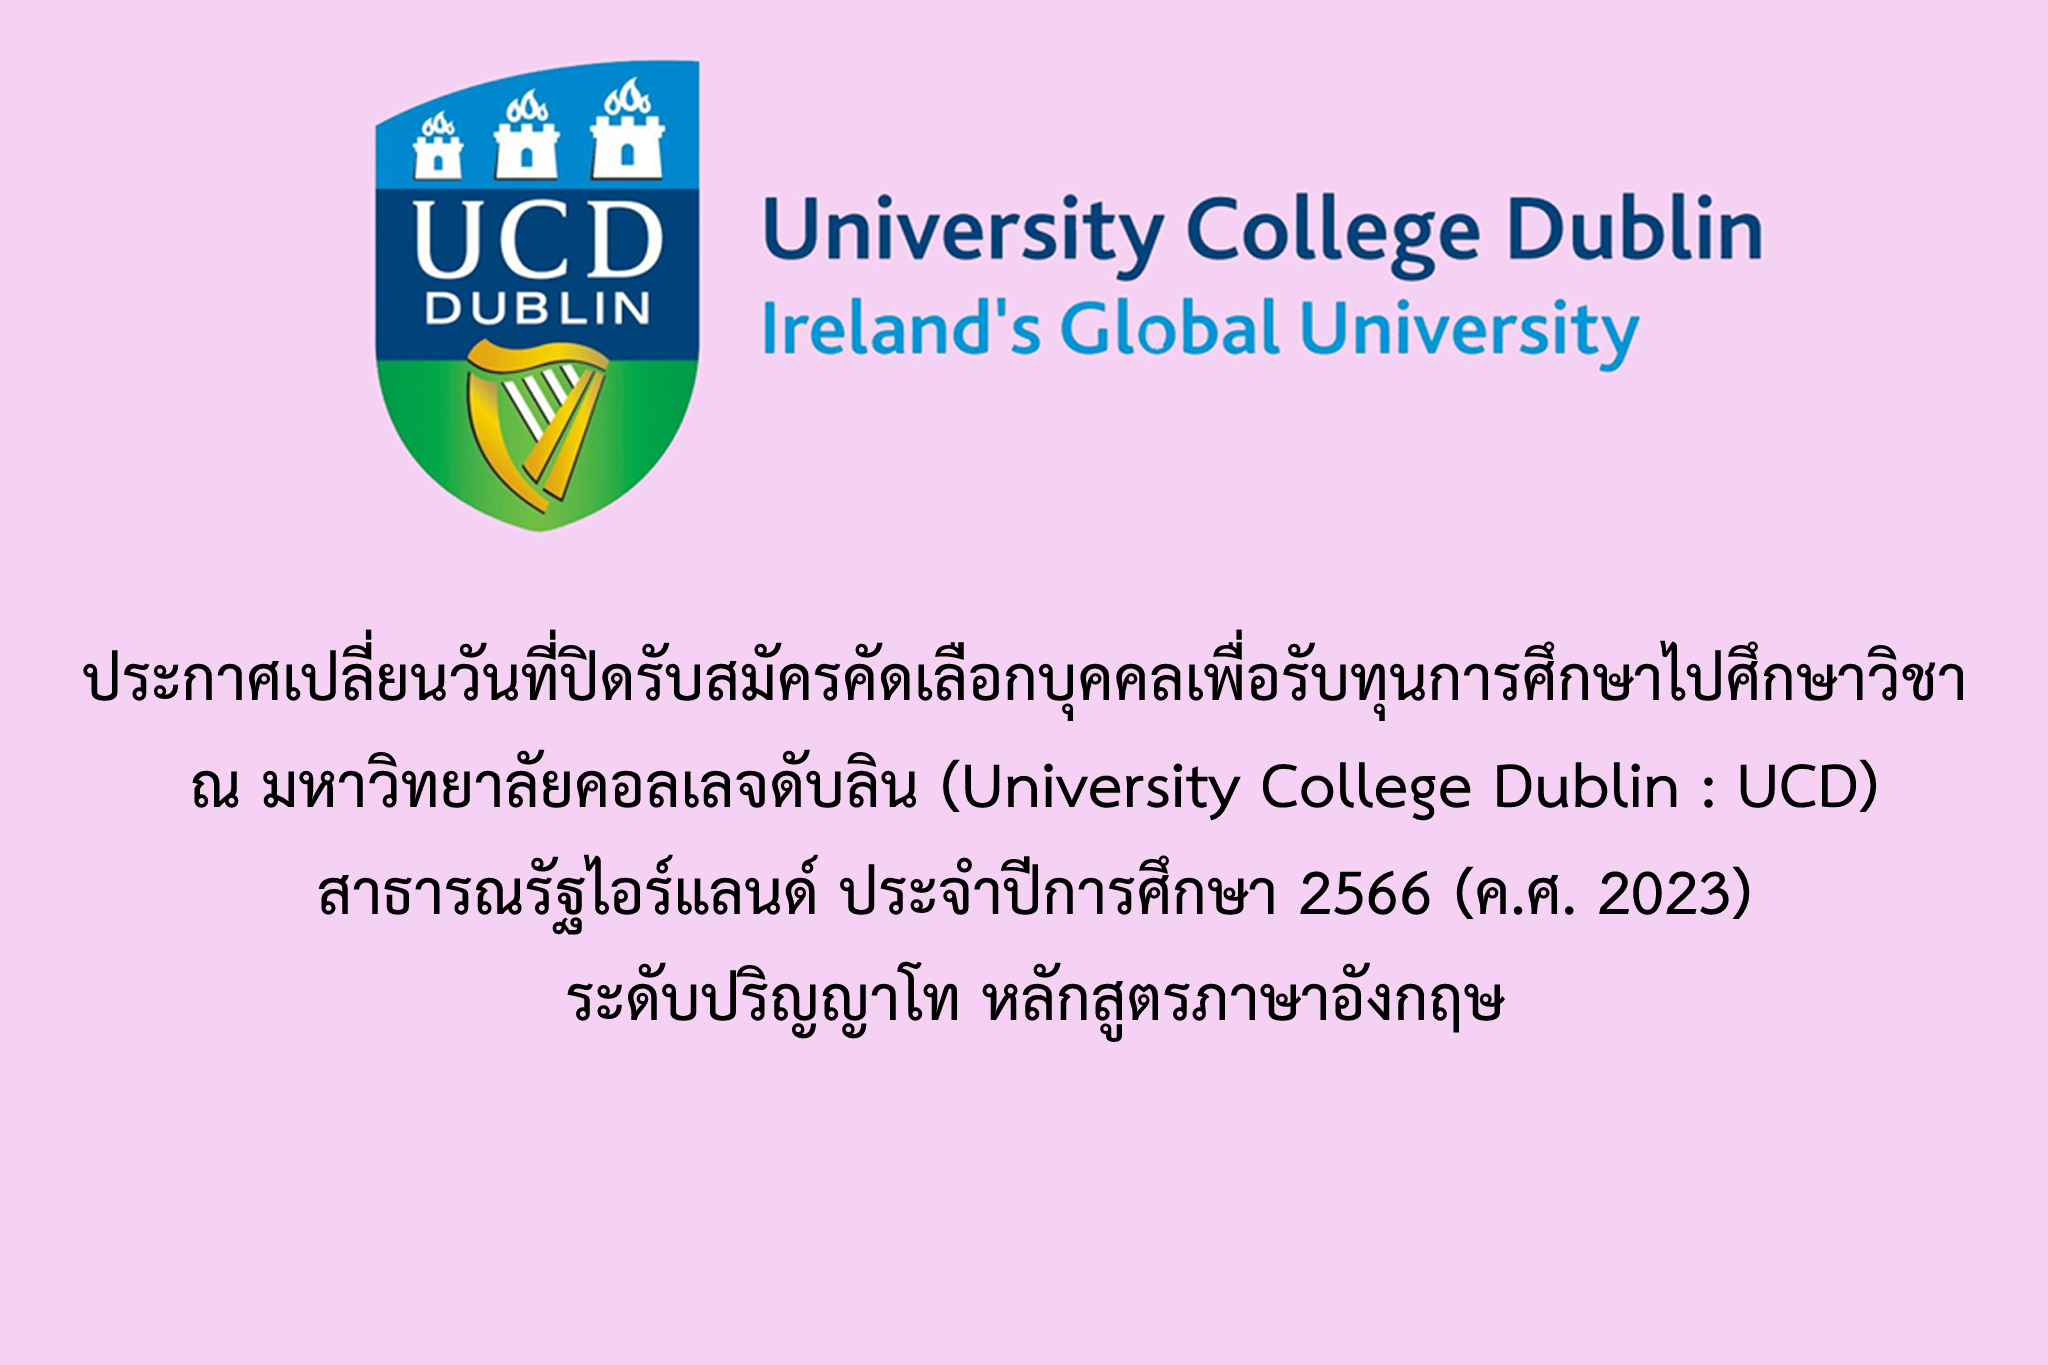   ประกาศเปลี่ยนวันที่ปิดรับสมัครคัดเลือกบุคคลเพื่อรับทุนการศึกษาไปศึกษาวิชา ณ มหาวิทยาลัยคอลเลจดับลิน (University College Dublin : UCD) สาธารณรัฐไอร์แลนด์ ประจำปีการศึกษา 2566 (ค.ศ. 2023) ระดับปริญญาโท หลักสูตรภาษาอังกฤษ